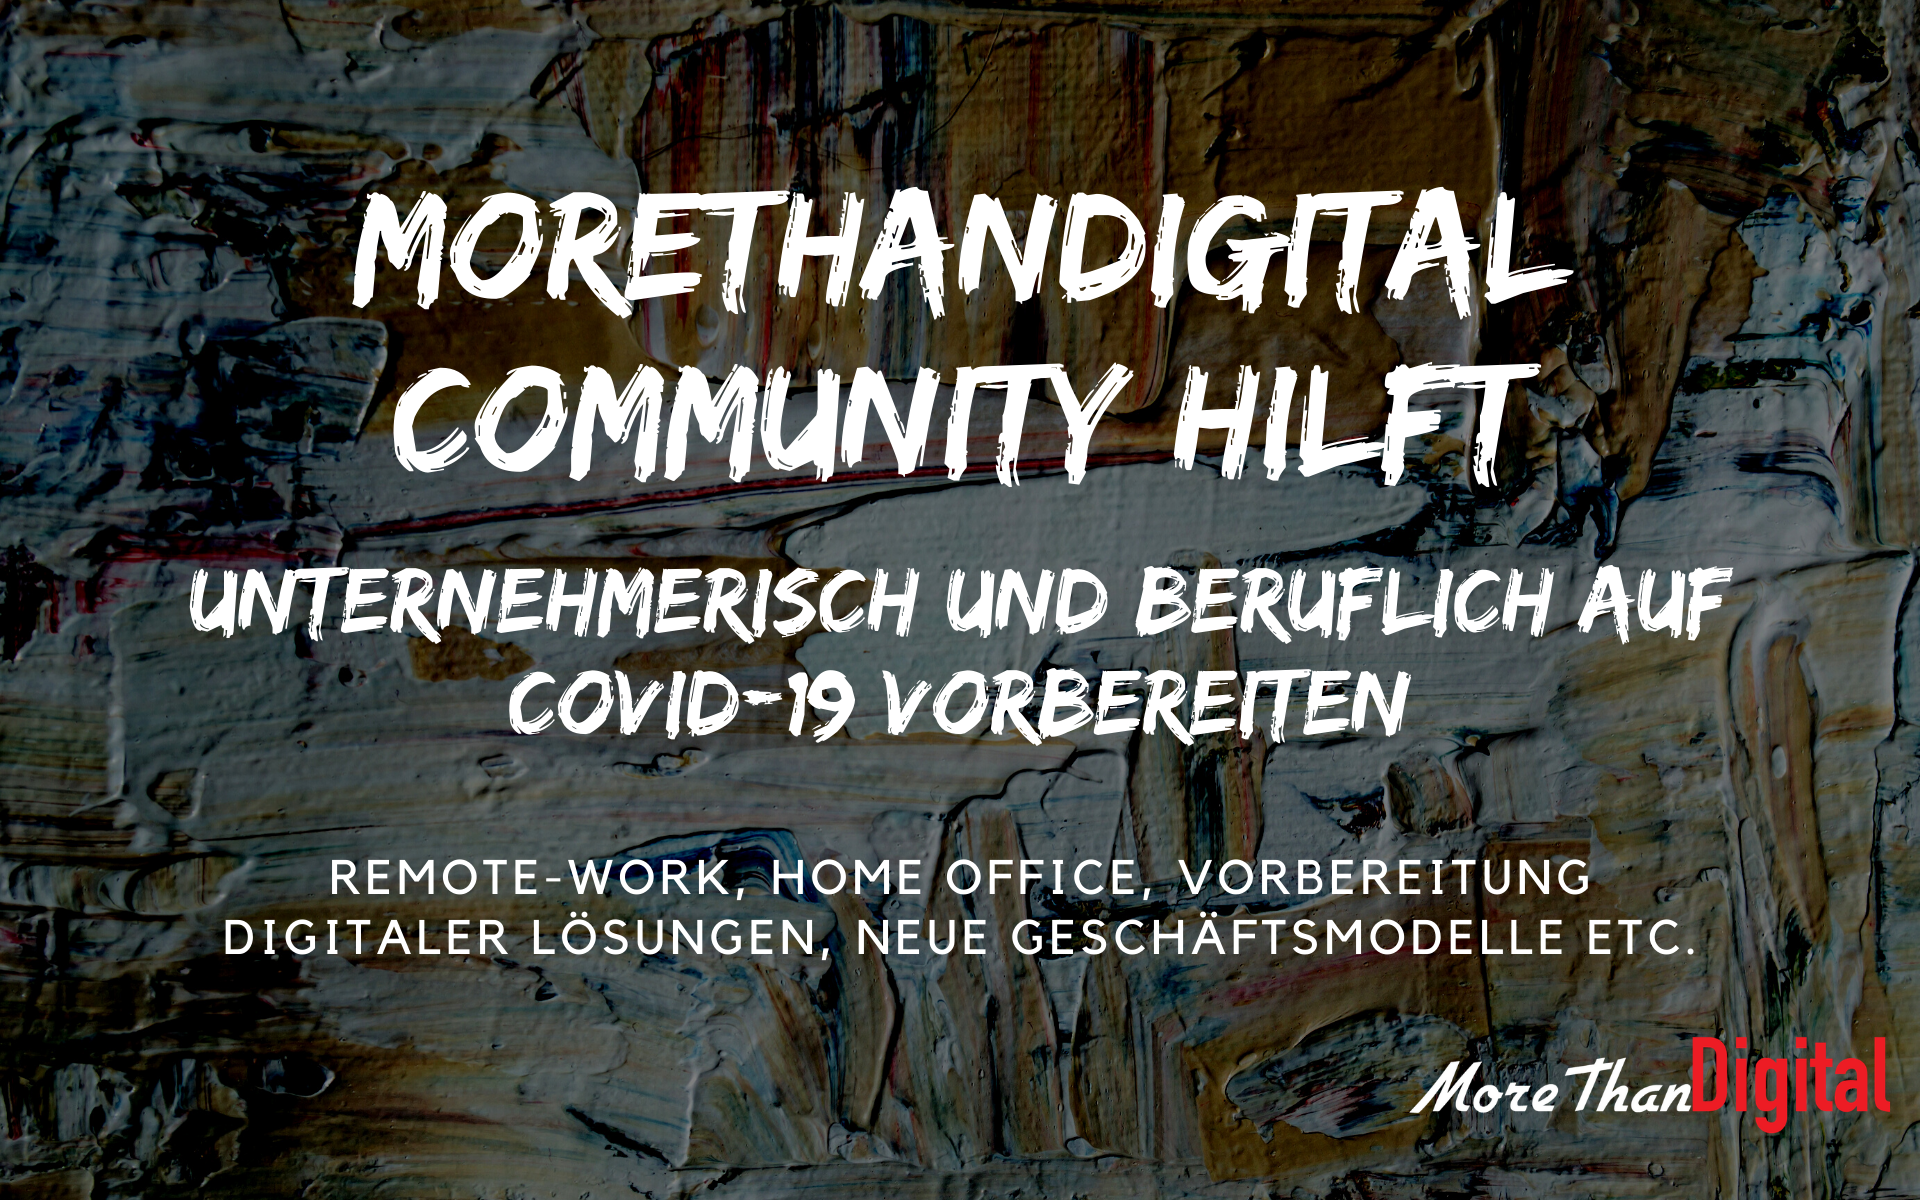 MoreThanDigital Community hilft Unternehmern und Privatpersonen für COVID-19